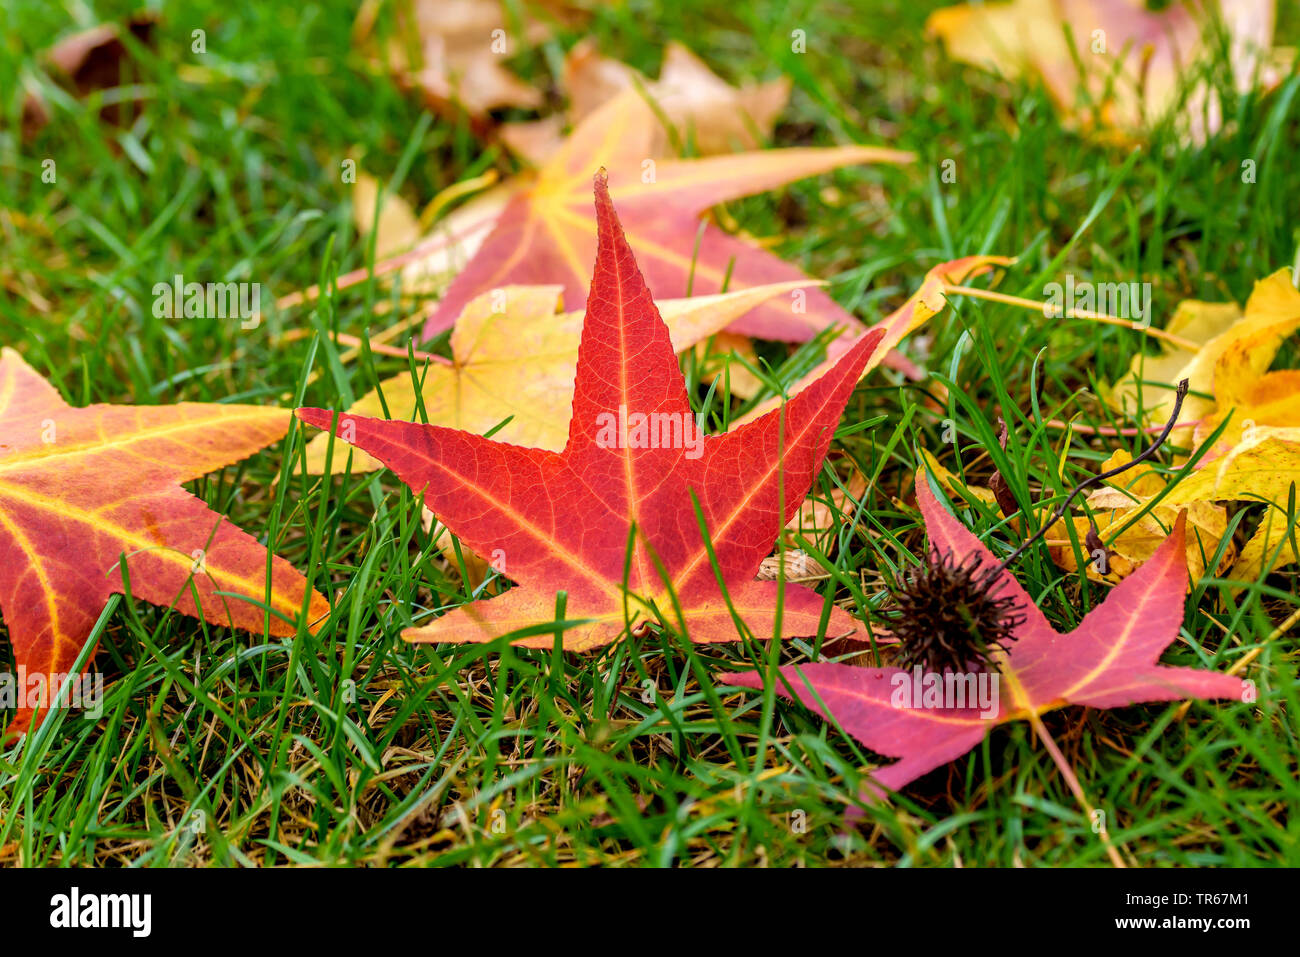 Satin Nussbaum, Sweet gum, Red Gum (Liquidambar styraciflua), Blätter im Herbst auf einem Rasen, Deutschland Stockfoto